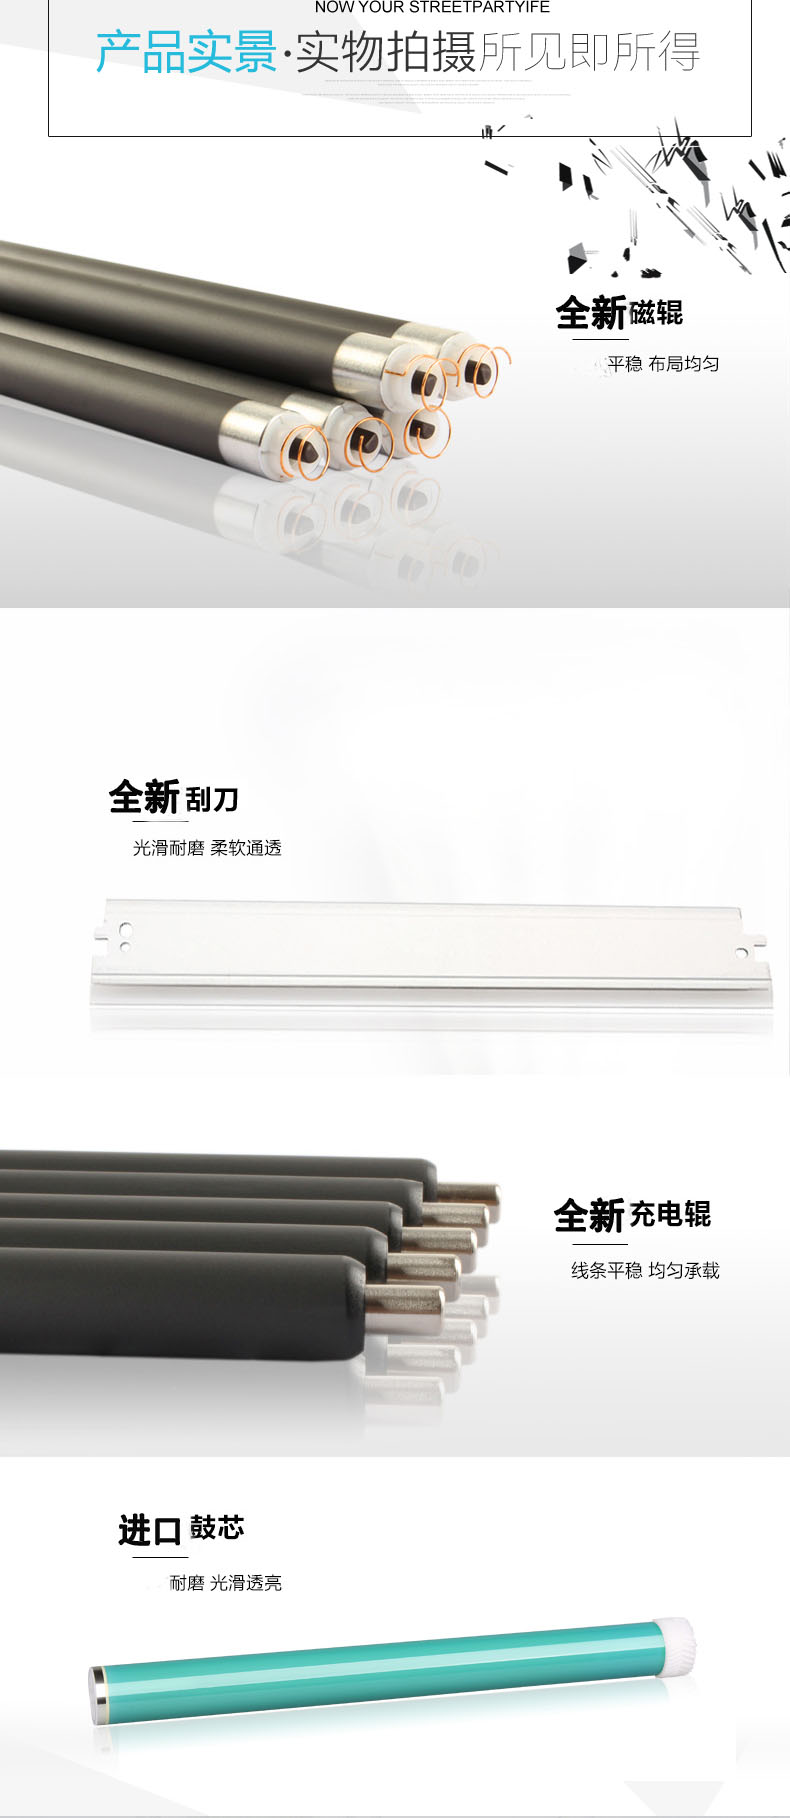 Saixin dễ dàng thêm bột cho hộp mực HP12A 1020plus 1018 1010 1015 M1005 Q2612A - Hộp mực